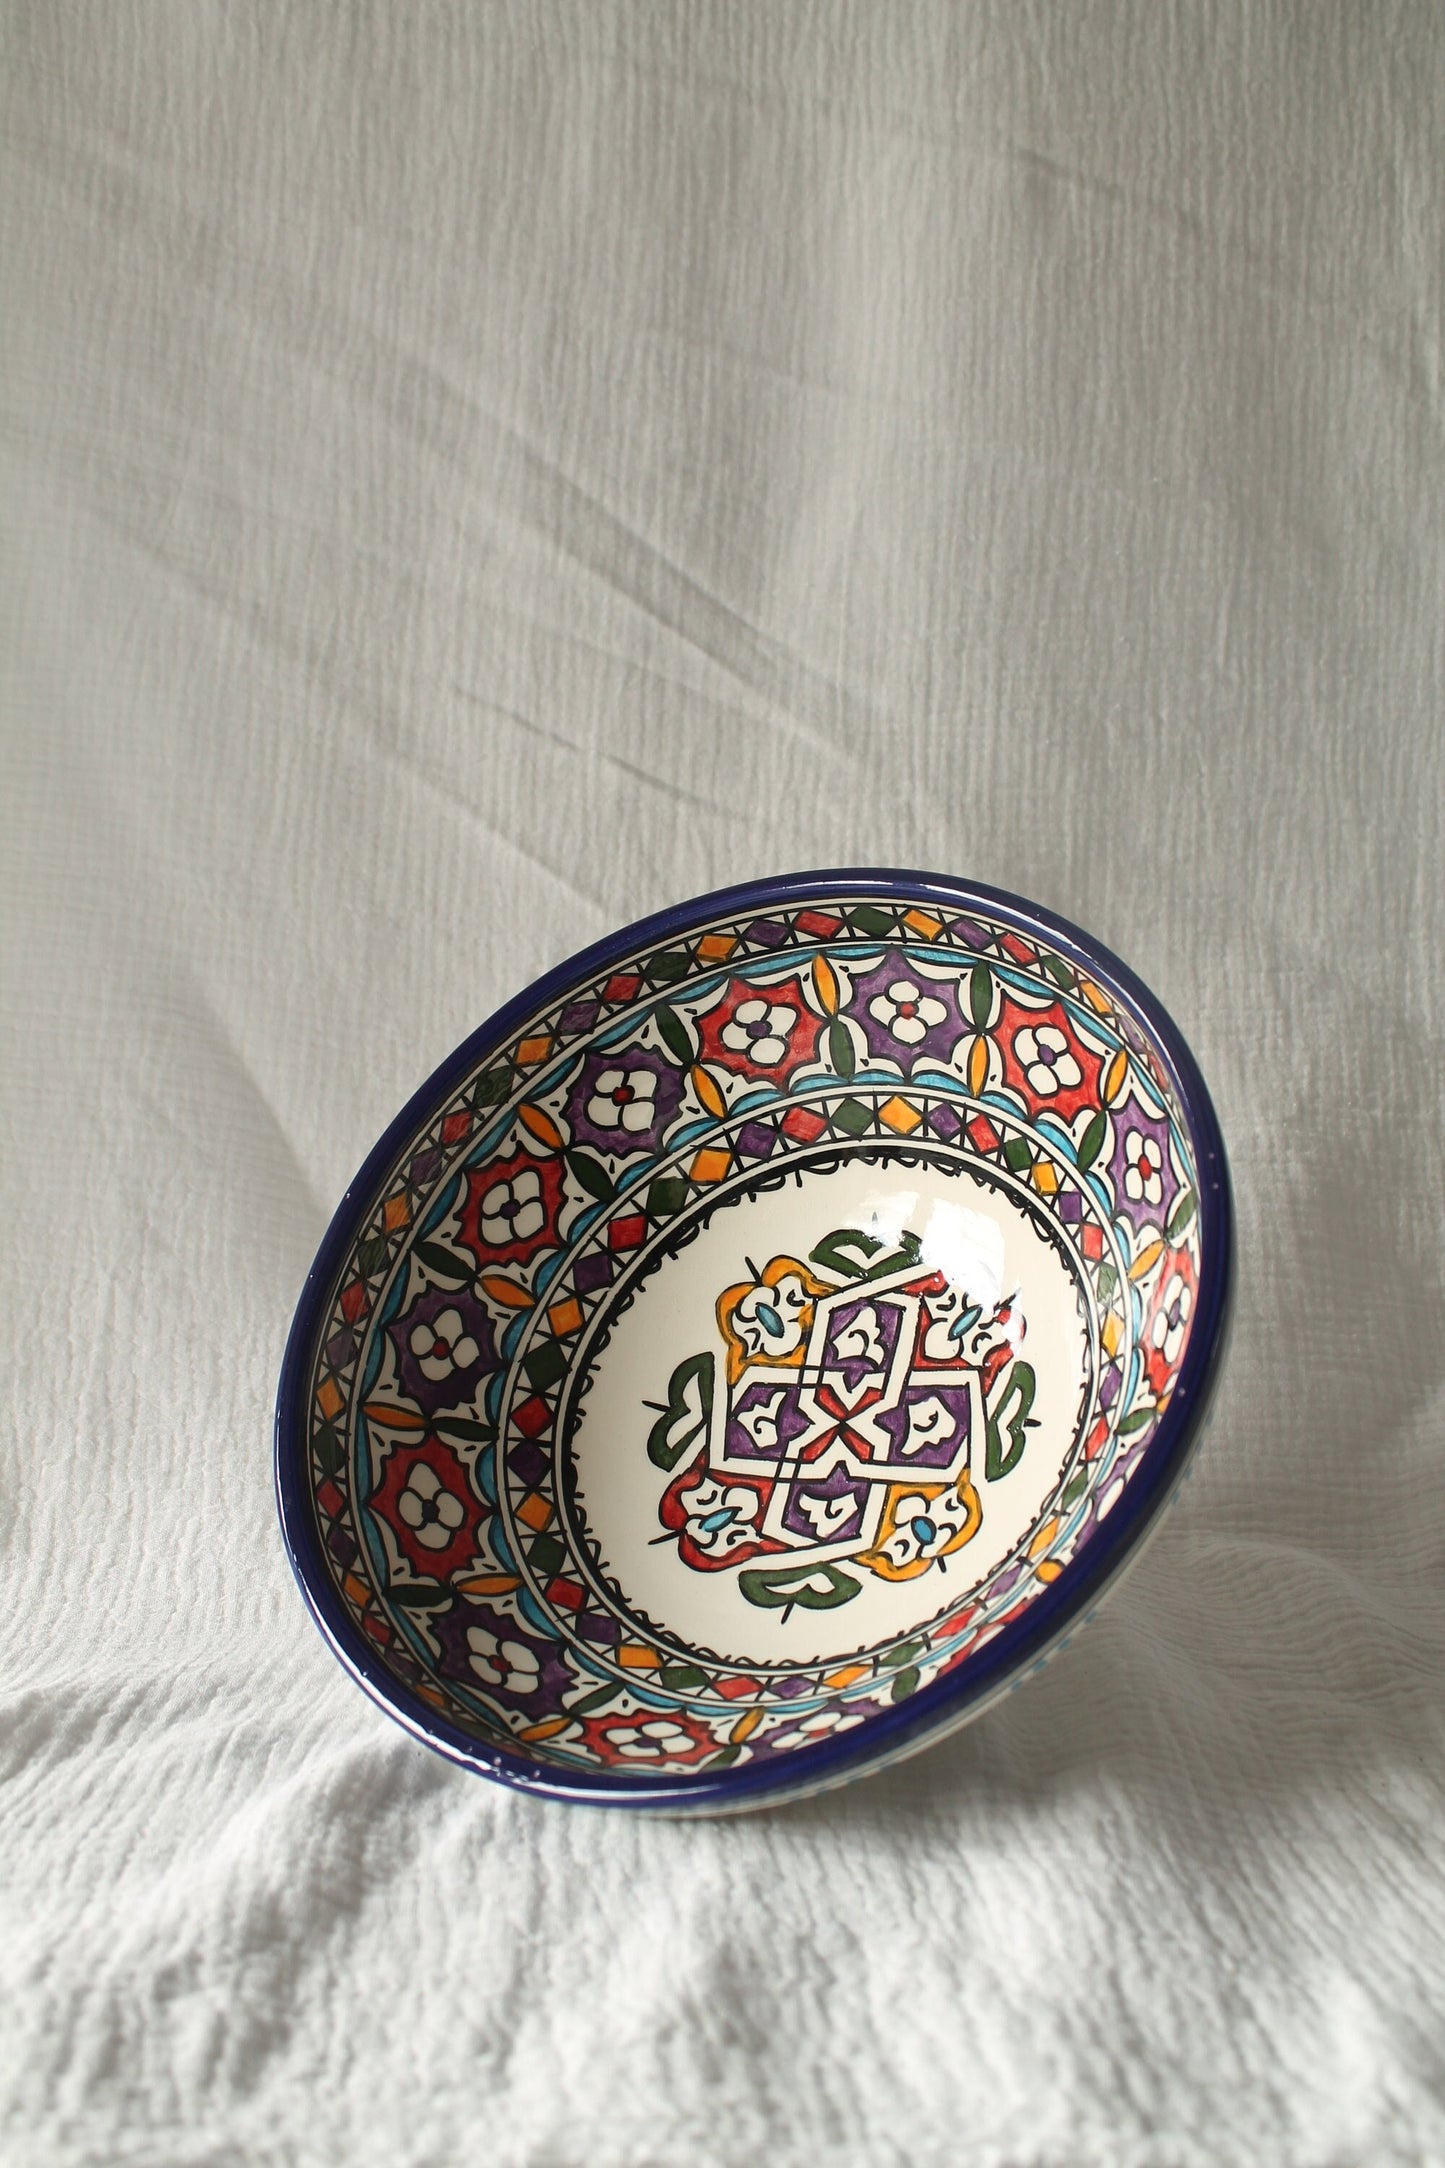 Grand bol en céramique, céramique peinte à la main à Fes, Maroc